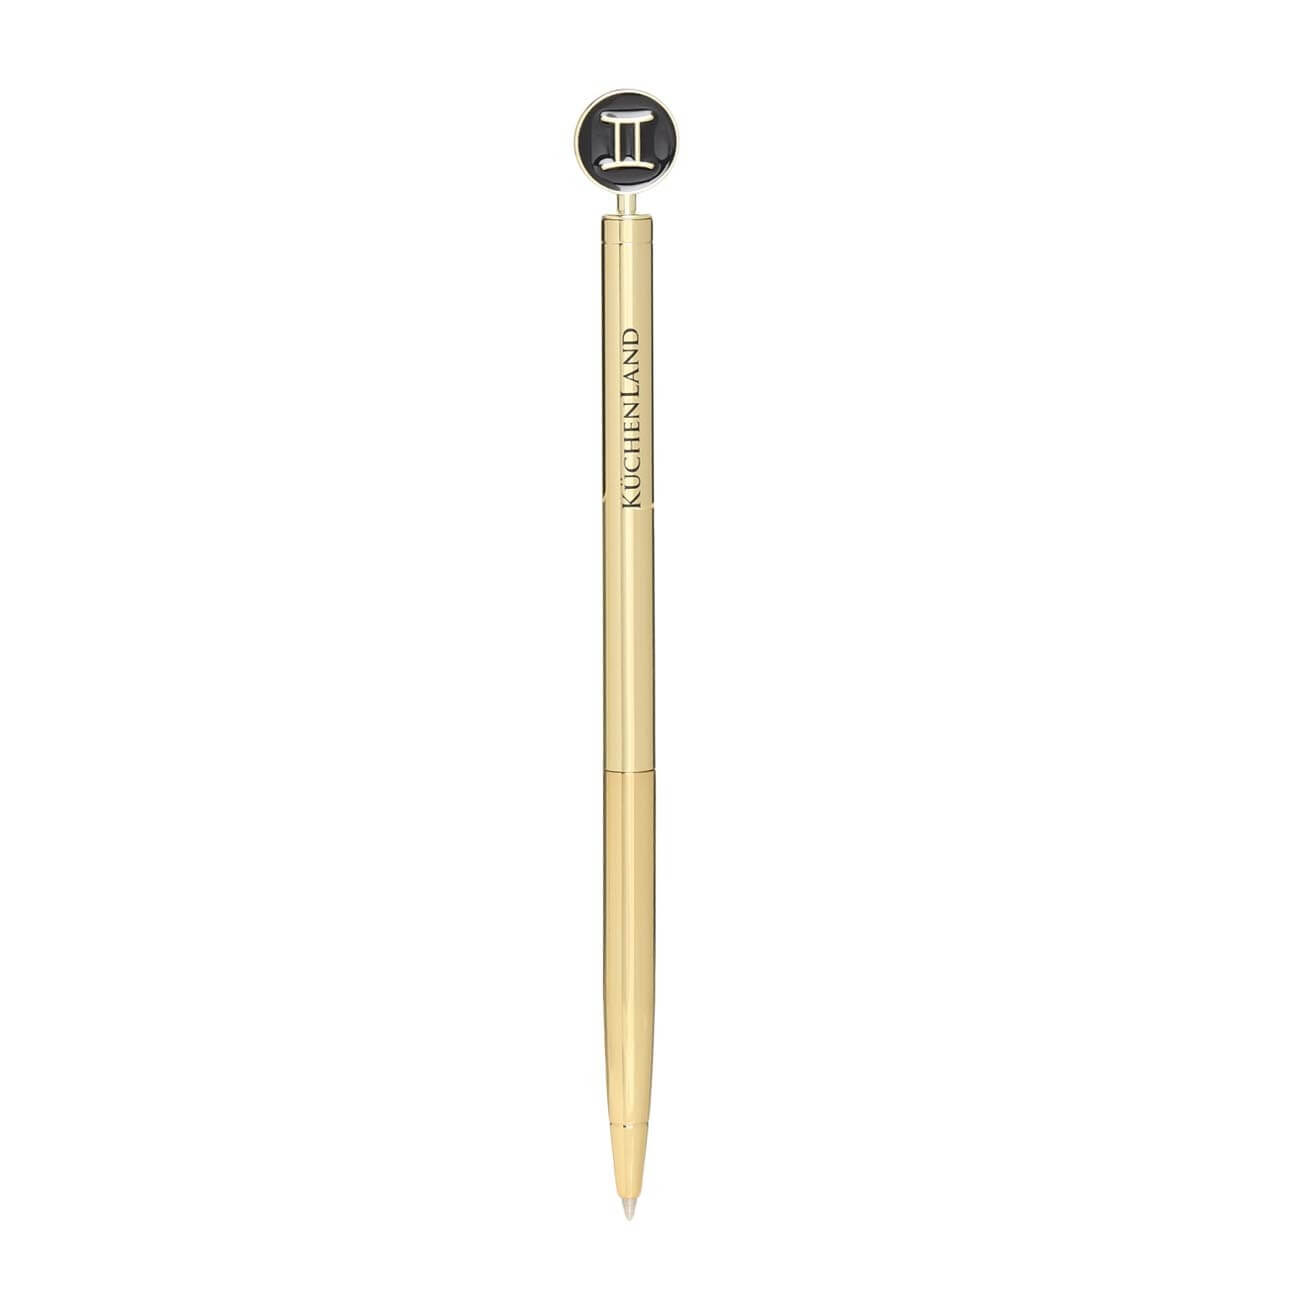 Ручка шариковая, 15 см, с фигуркой, сталь, золотисто-черная, Близнецы, Zodiac